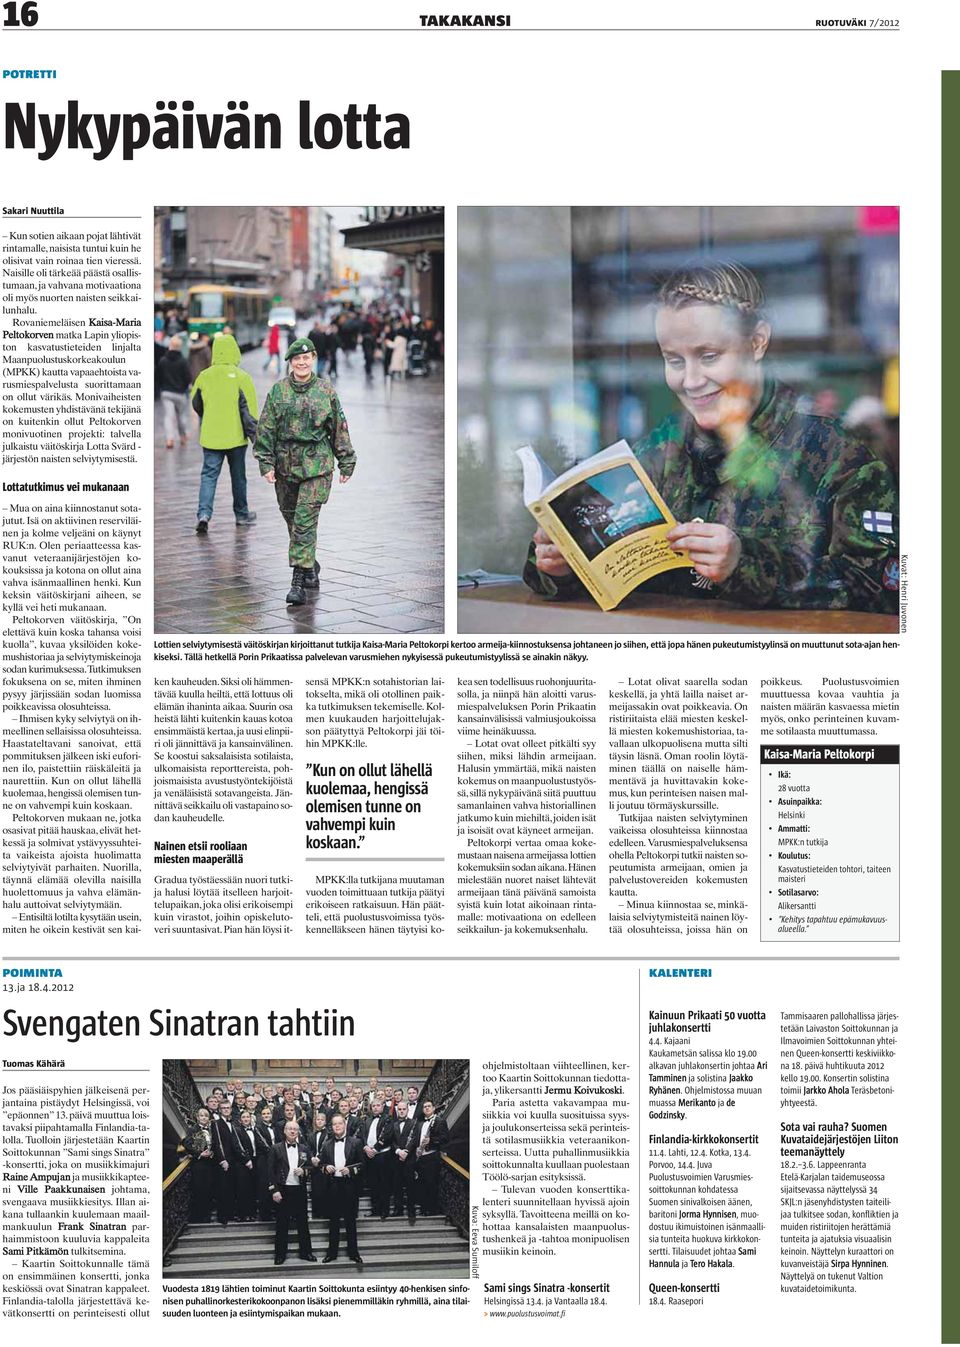 Rovaniemeläisen Kaisa-Maria Peltokorven matka Lapin yliopiston kasvatustieteiden linjalta Maanpuolustuskorkeakoulun (MPKK) kautta vapaaehtoista varusmiespalvelusta suorittamaan on ollut värikäs.